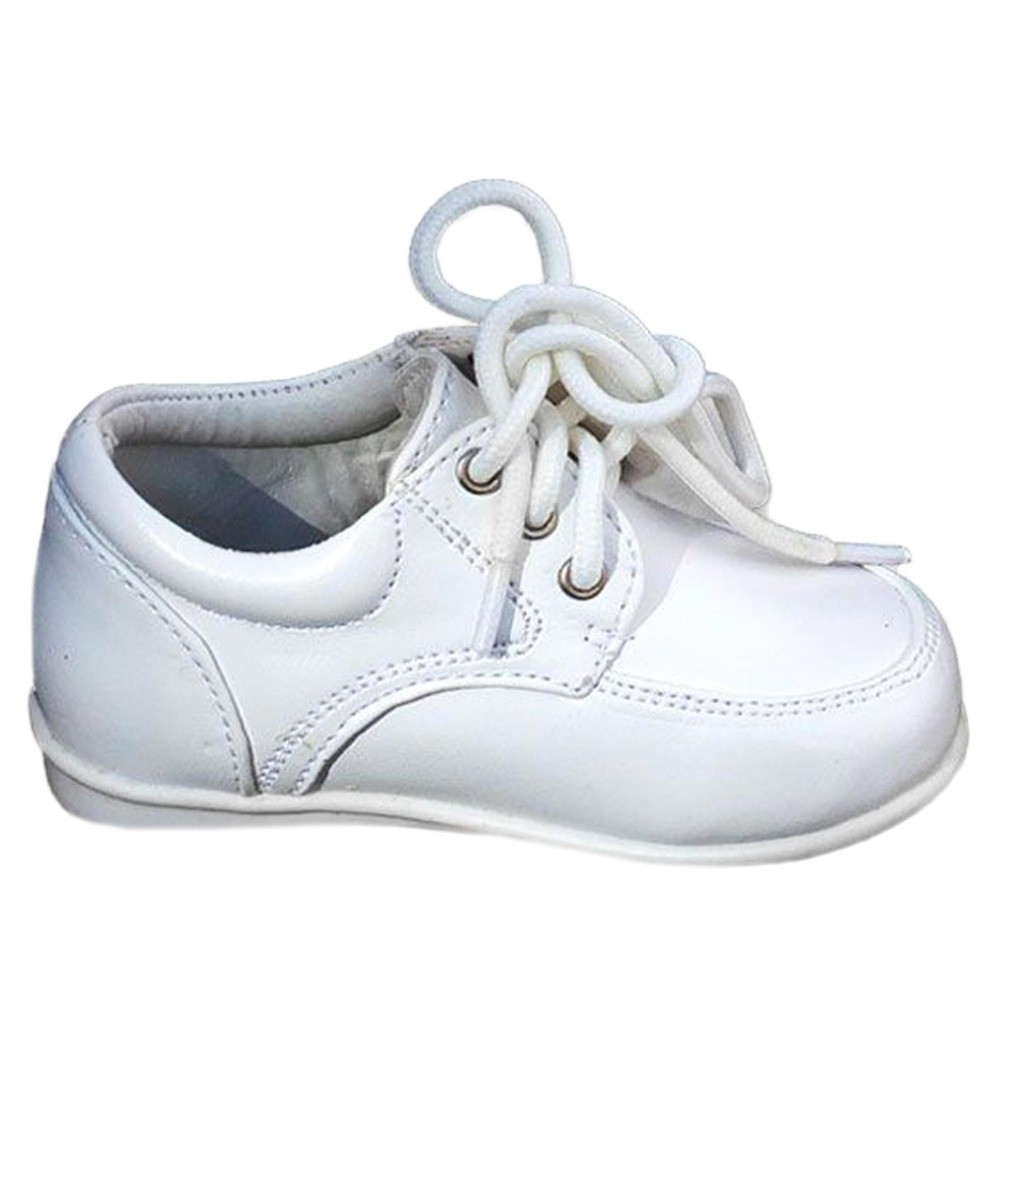 Baby Jungen Schuhe mit Schüren - Weiß